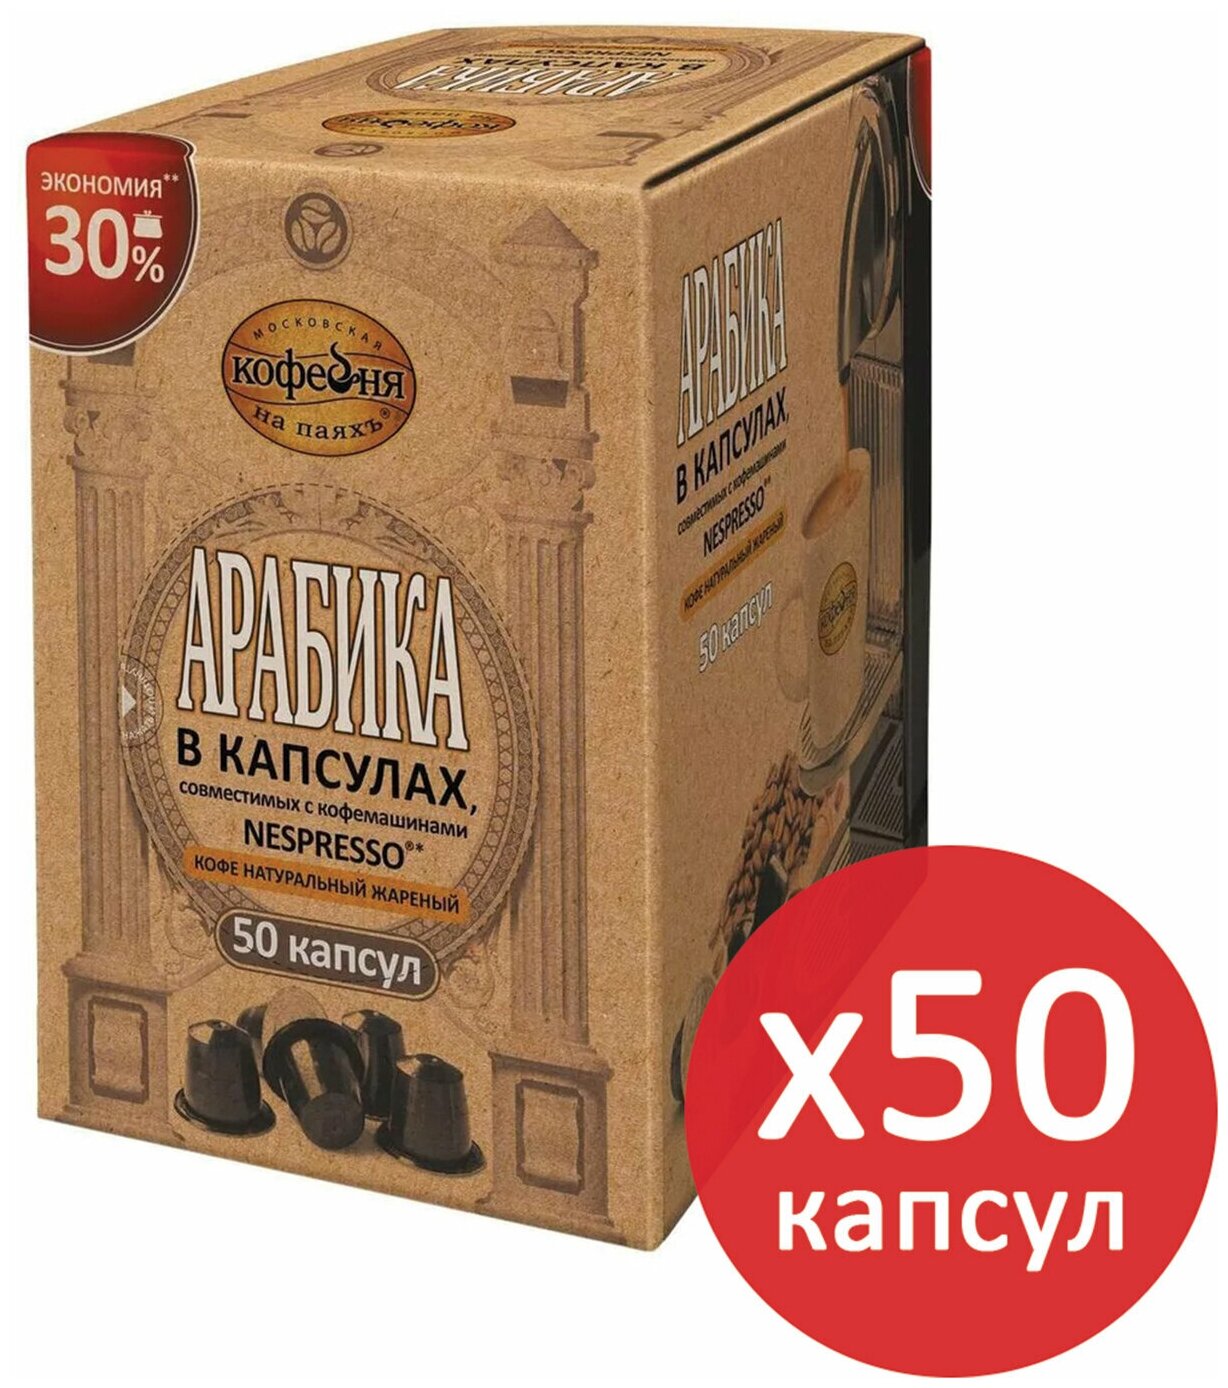 Кофе в капсулах 50 порций для Nespresso, московская кофейня на паяхъ "Арабика", арабика 100%